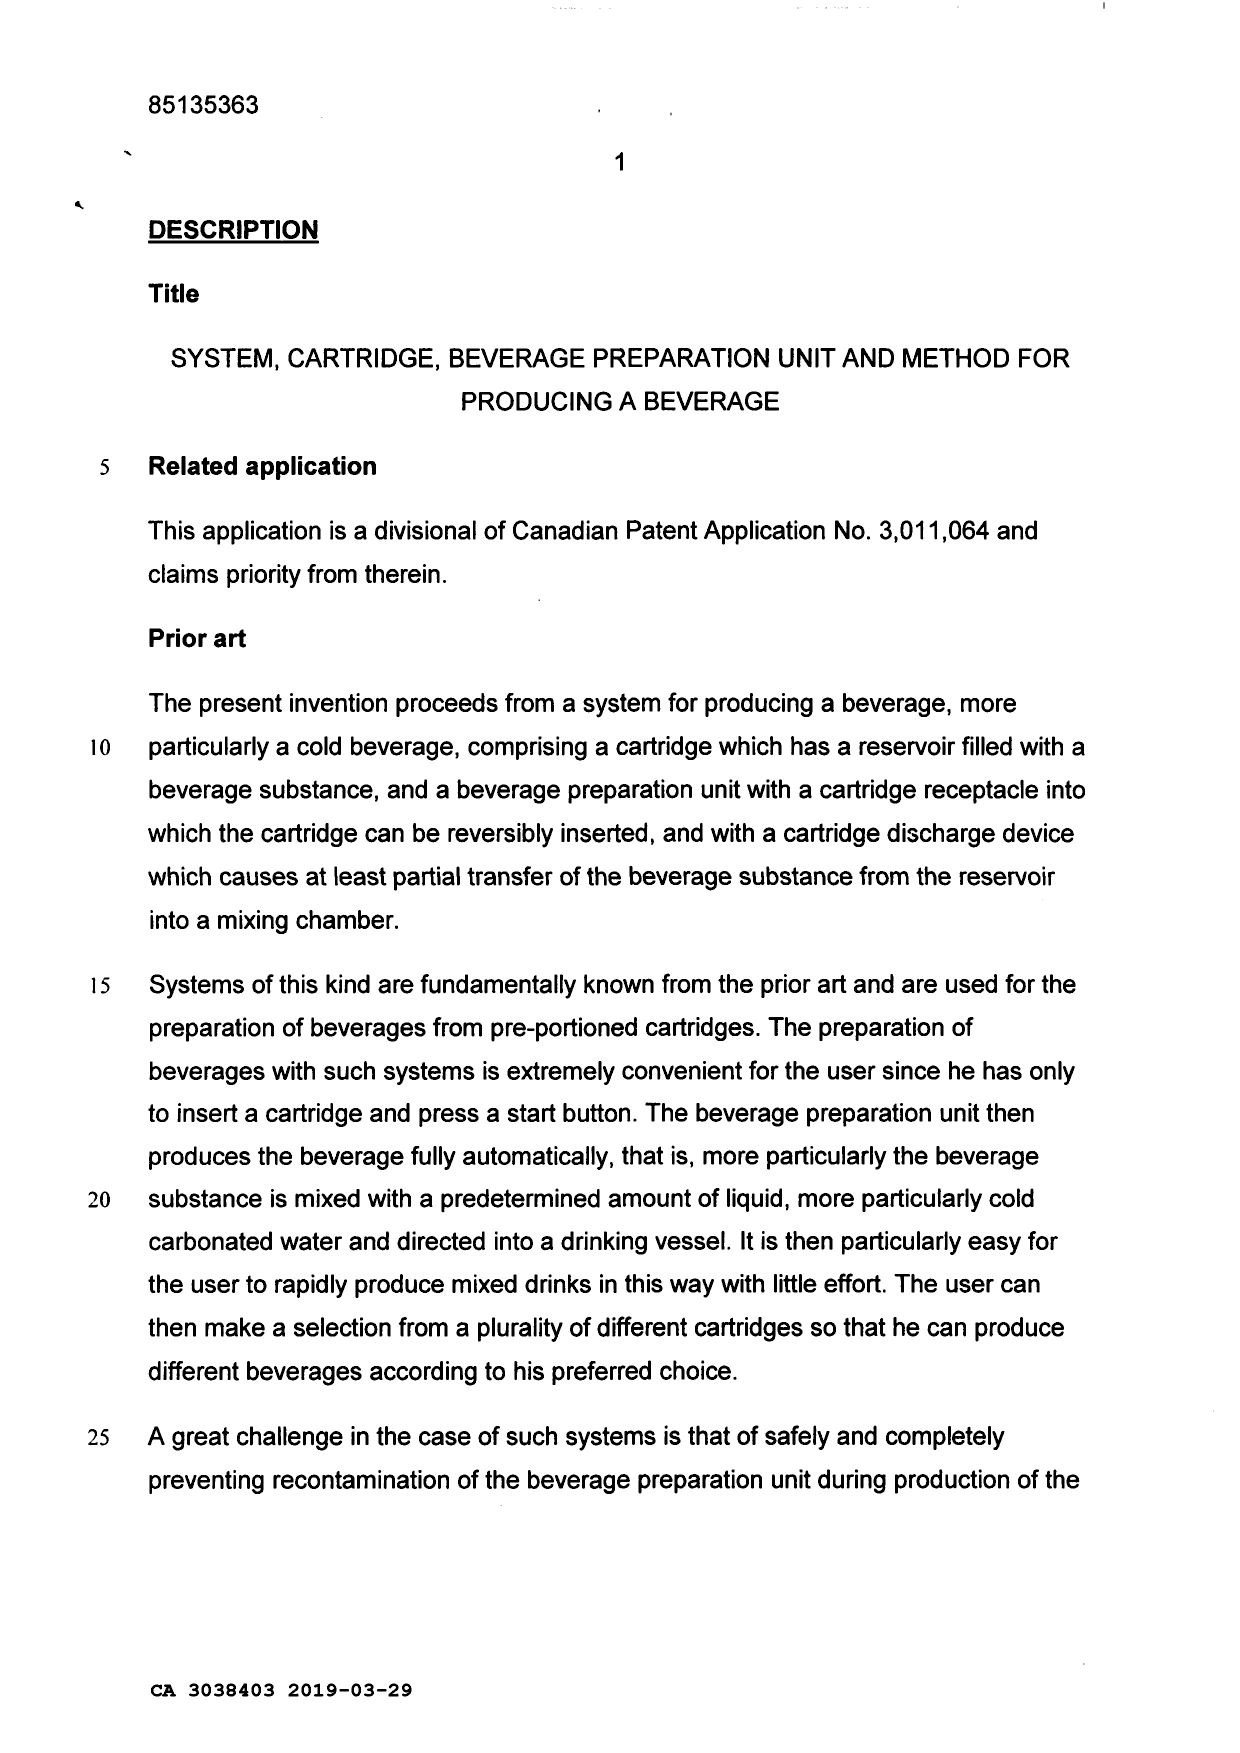 Document de brevet canadien 3038403. Description 20190329. Image 1 de 37